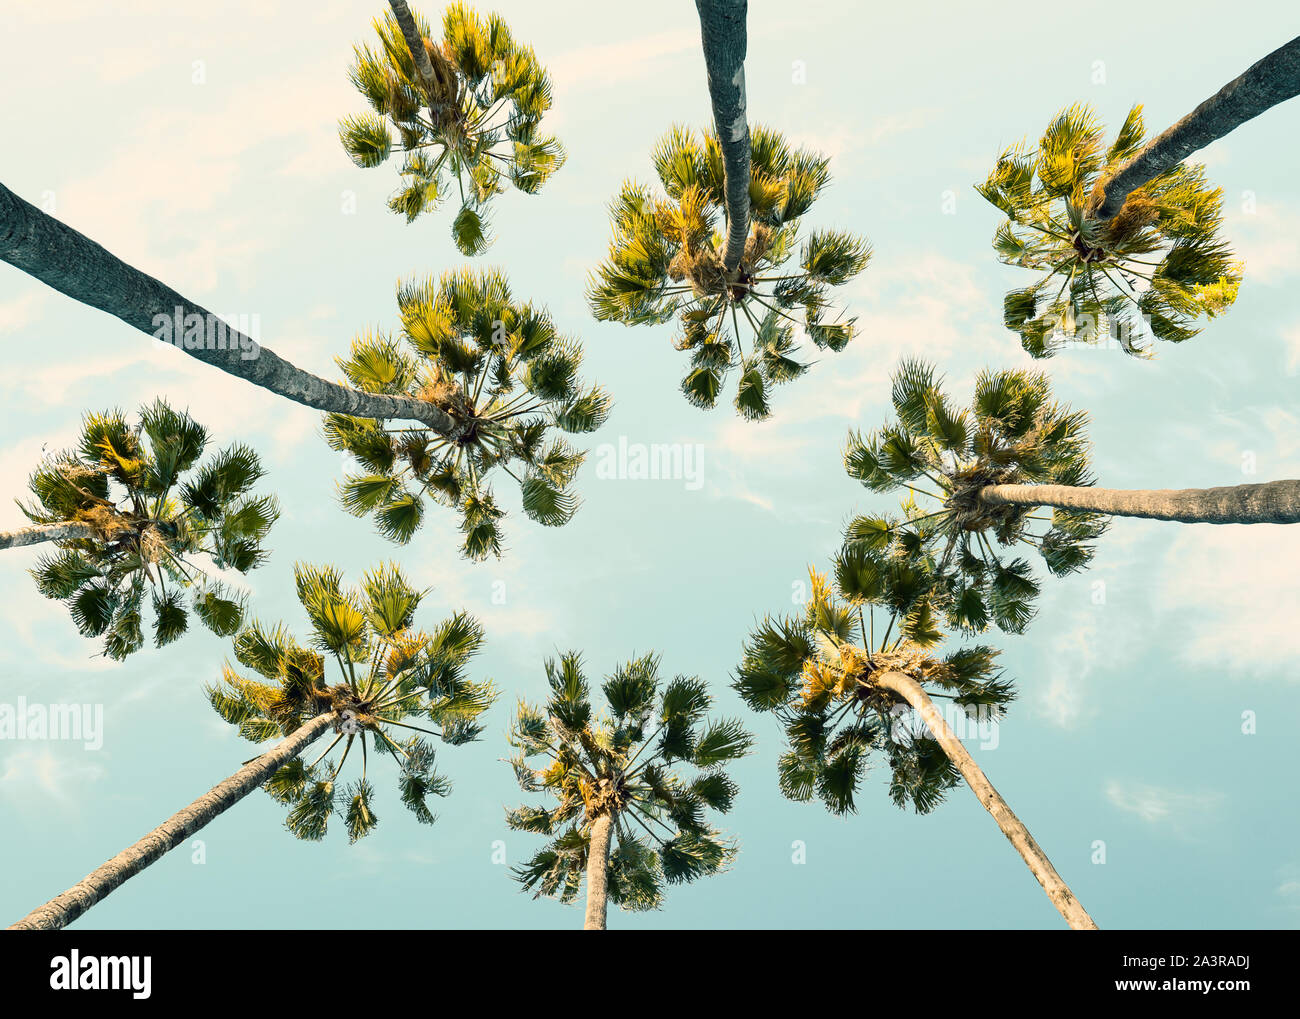 Tropische Palmen auf Sommer Himmel Hintergrund. Low Angle View. Getonten Bild Stockfoto